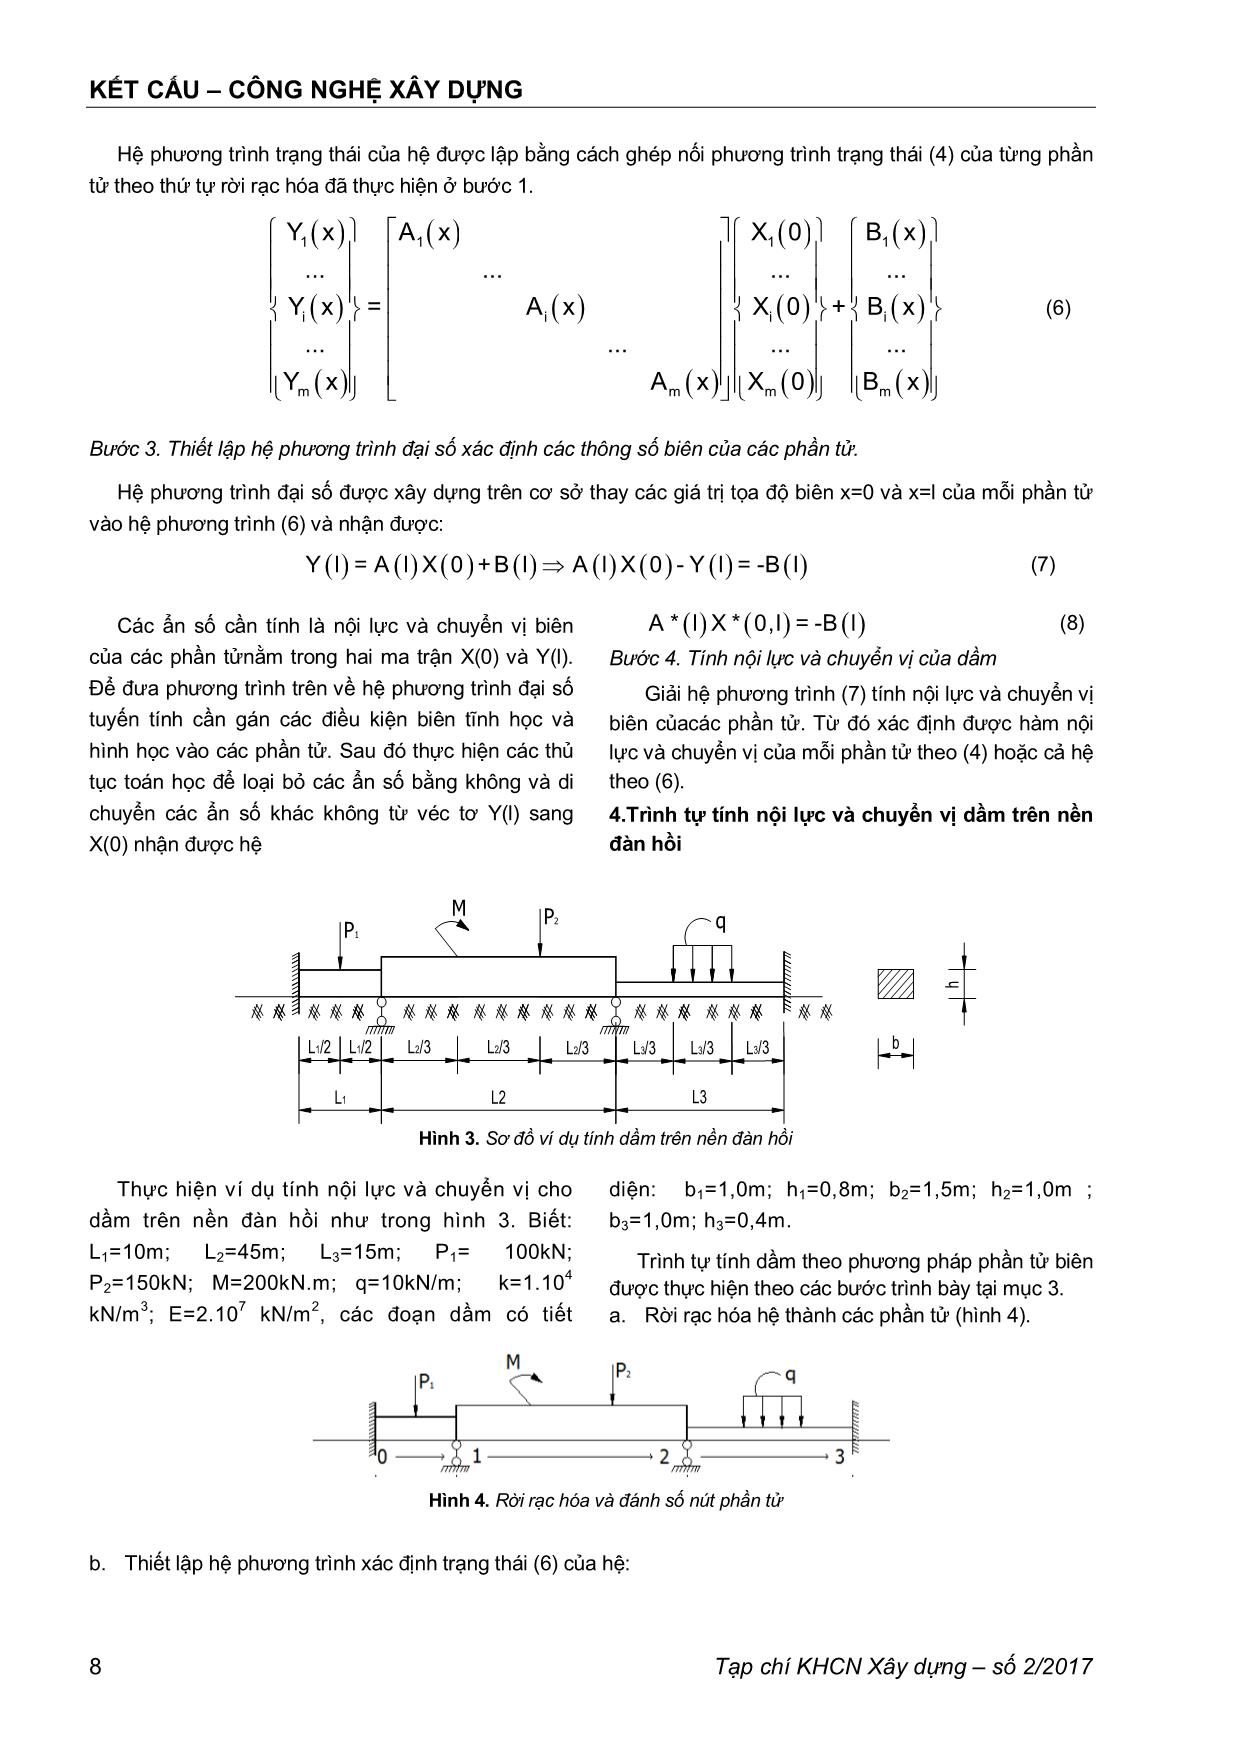 Phương pháp phần tử biên tính nội lực và chuyển vị hệ dầm trên nền đàn hồi theo mô hình Winkler trang 3